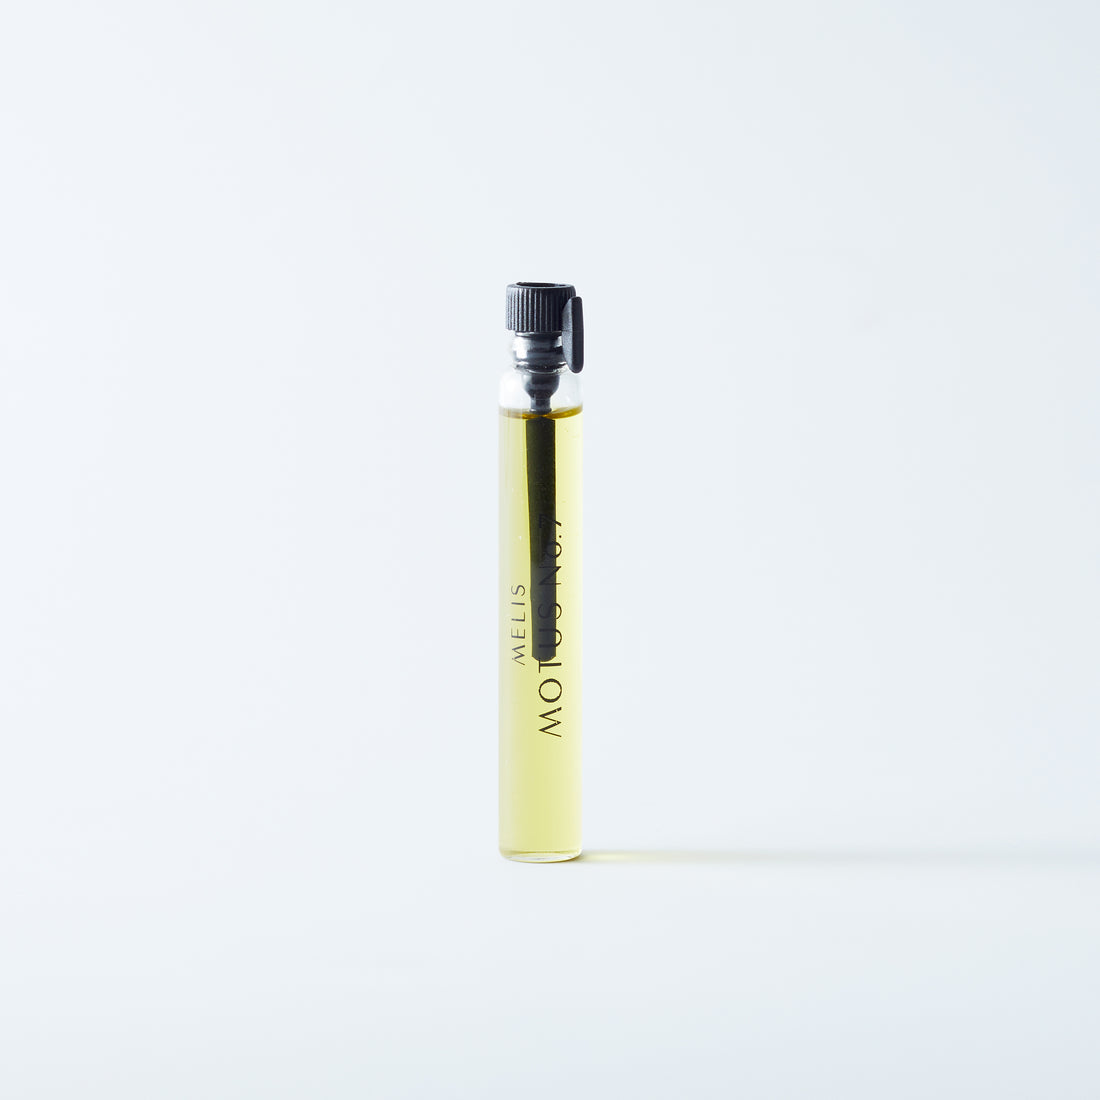 Natural perfume Melis Motus No 7 in 2ml sample